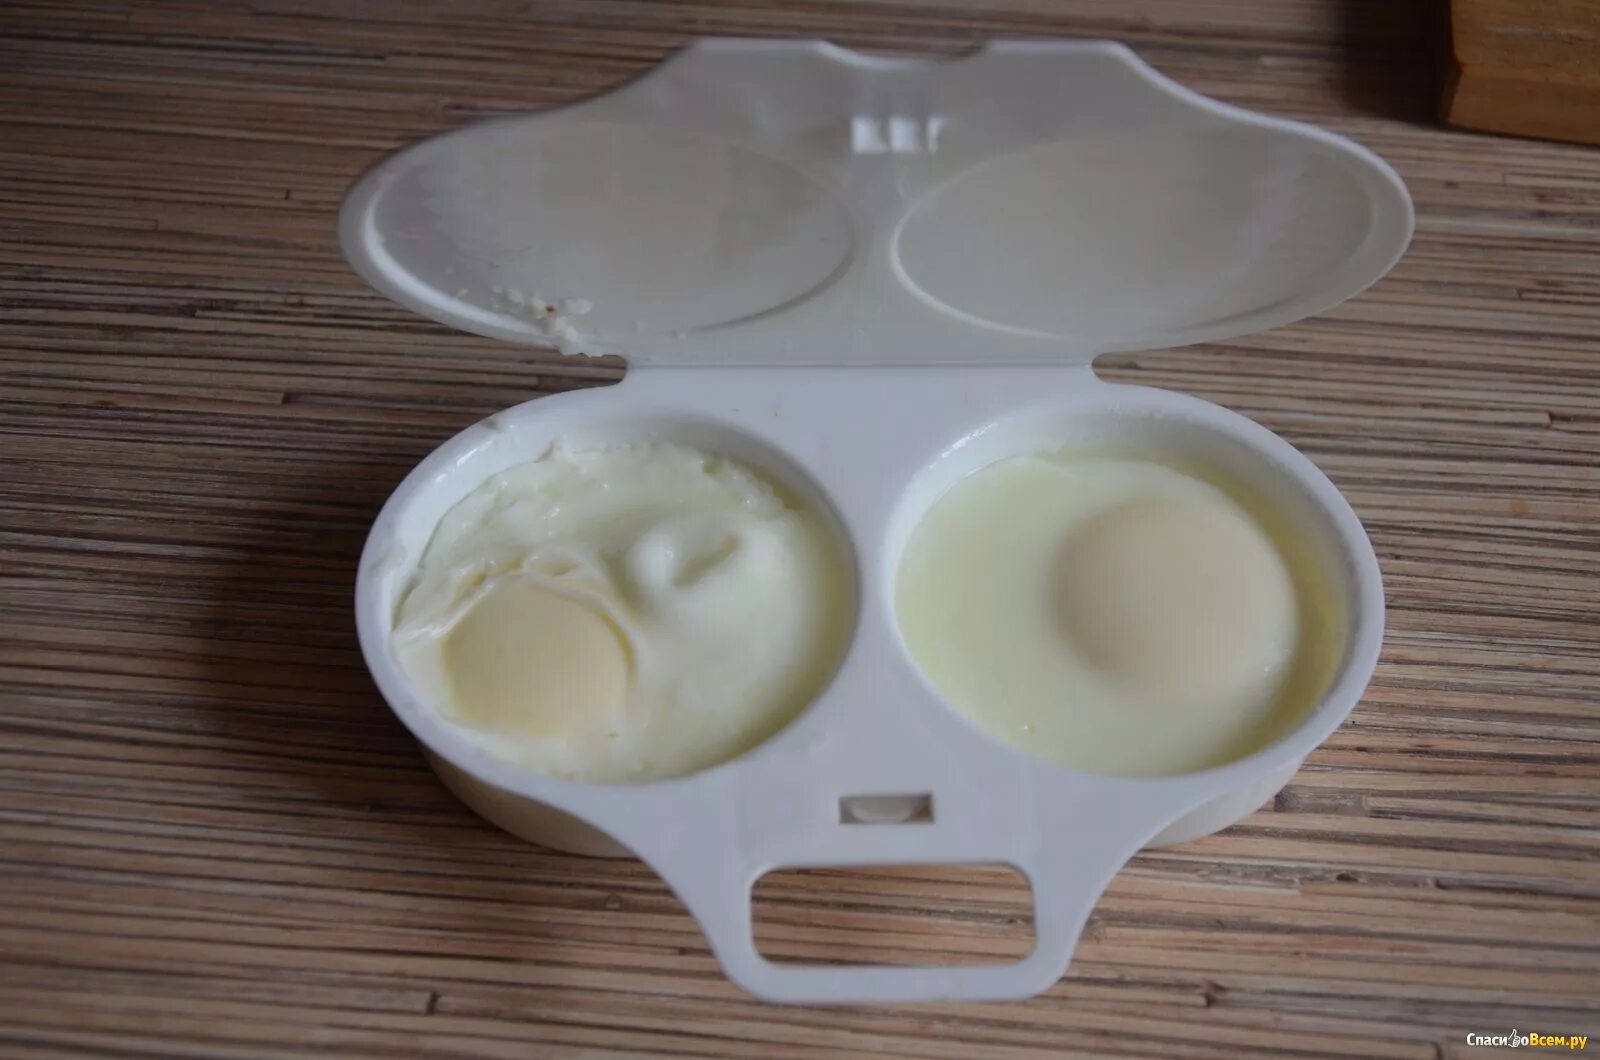 Контейнер для приготовления яиц СВЧ глазунья Полимербыт 4345200. Контейнер для запекания яиц в микроволновке. Контейнер для яиц для микроволновки. Форма для яичницы в СВЧ. Сварить яйцо в микроволновке в воде